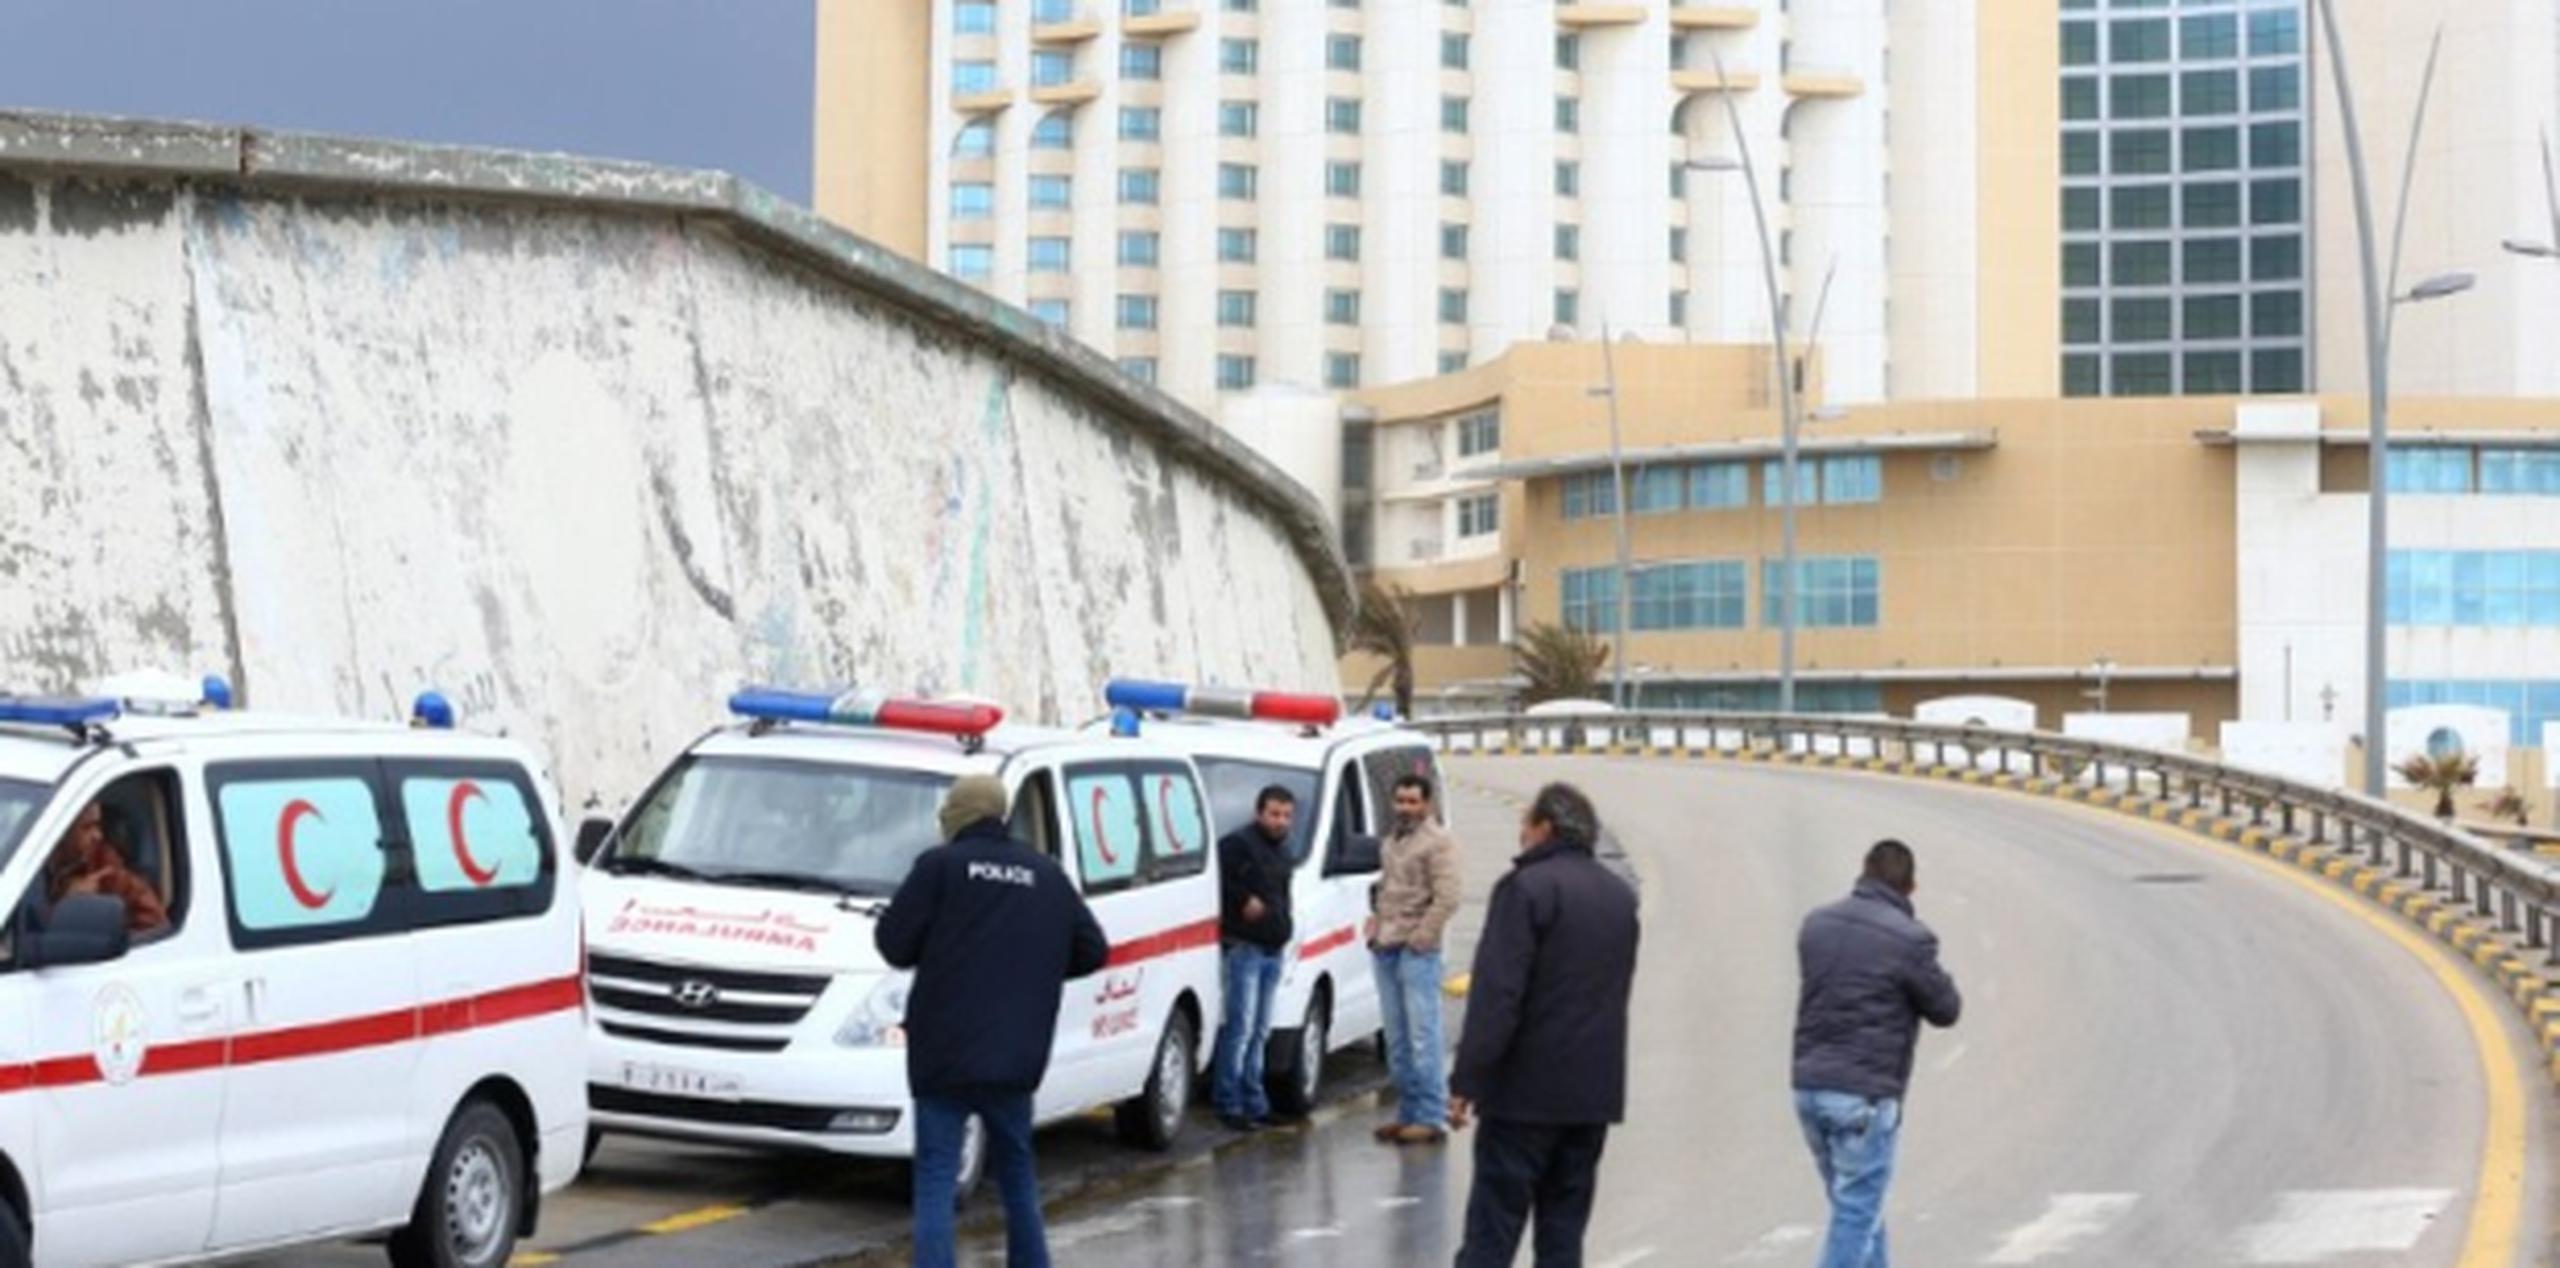 En el hotel había huéspedes italianos, británicos y turcos, pero a la hora del asalto estaba prácticamente vacío. (AFP)